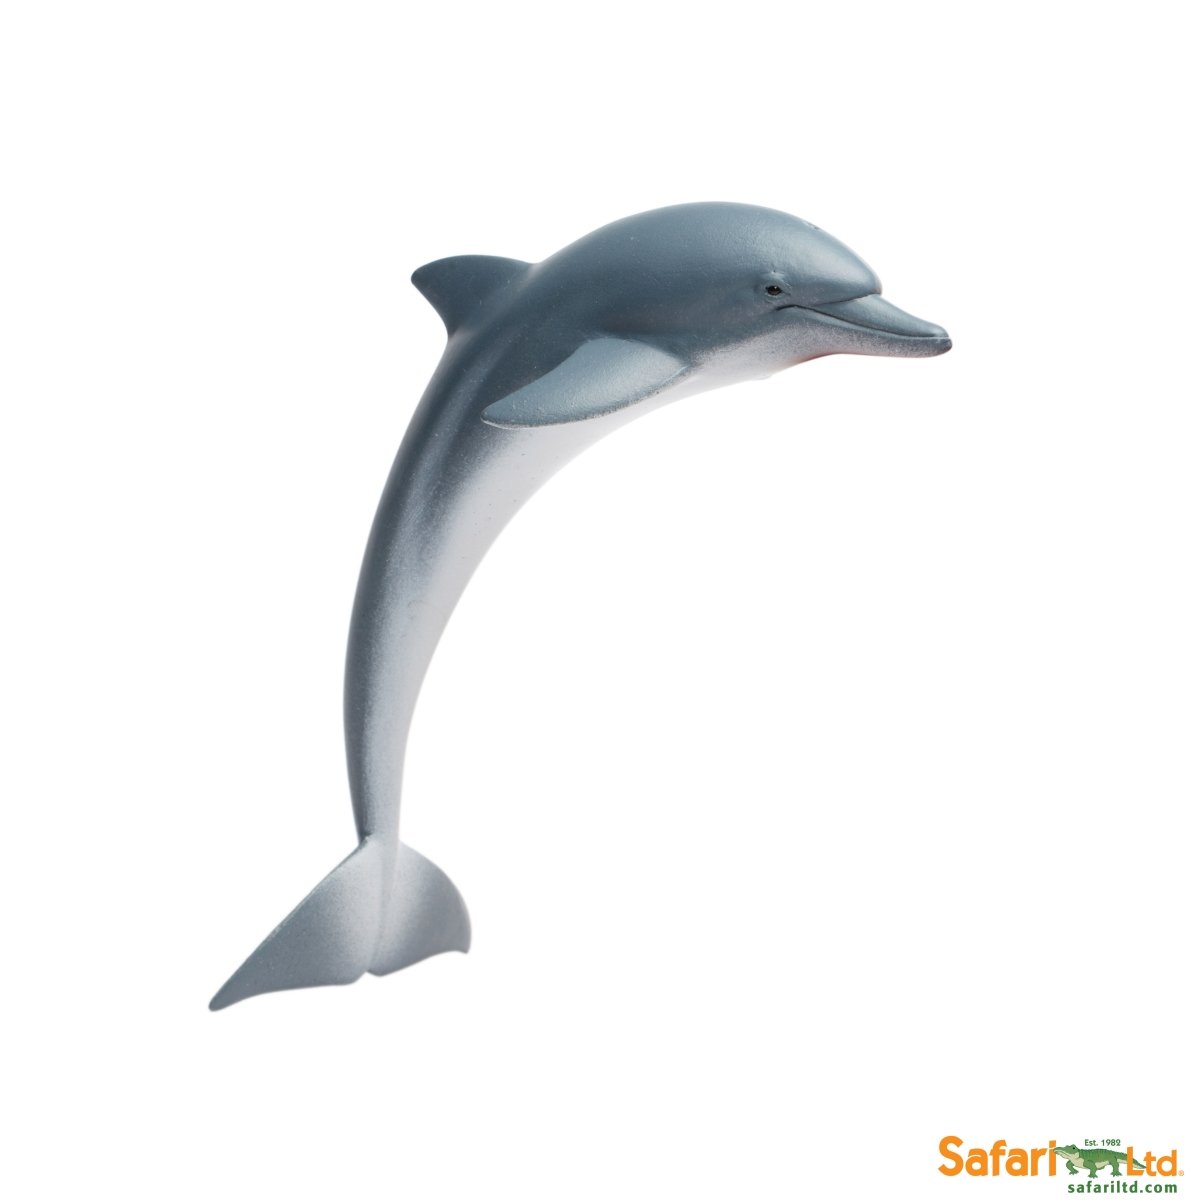 Picture of Safari 200129 Dolphin Figurine, Multi Color